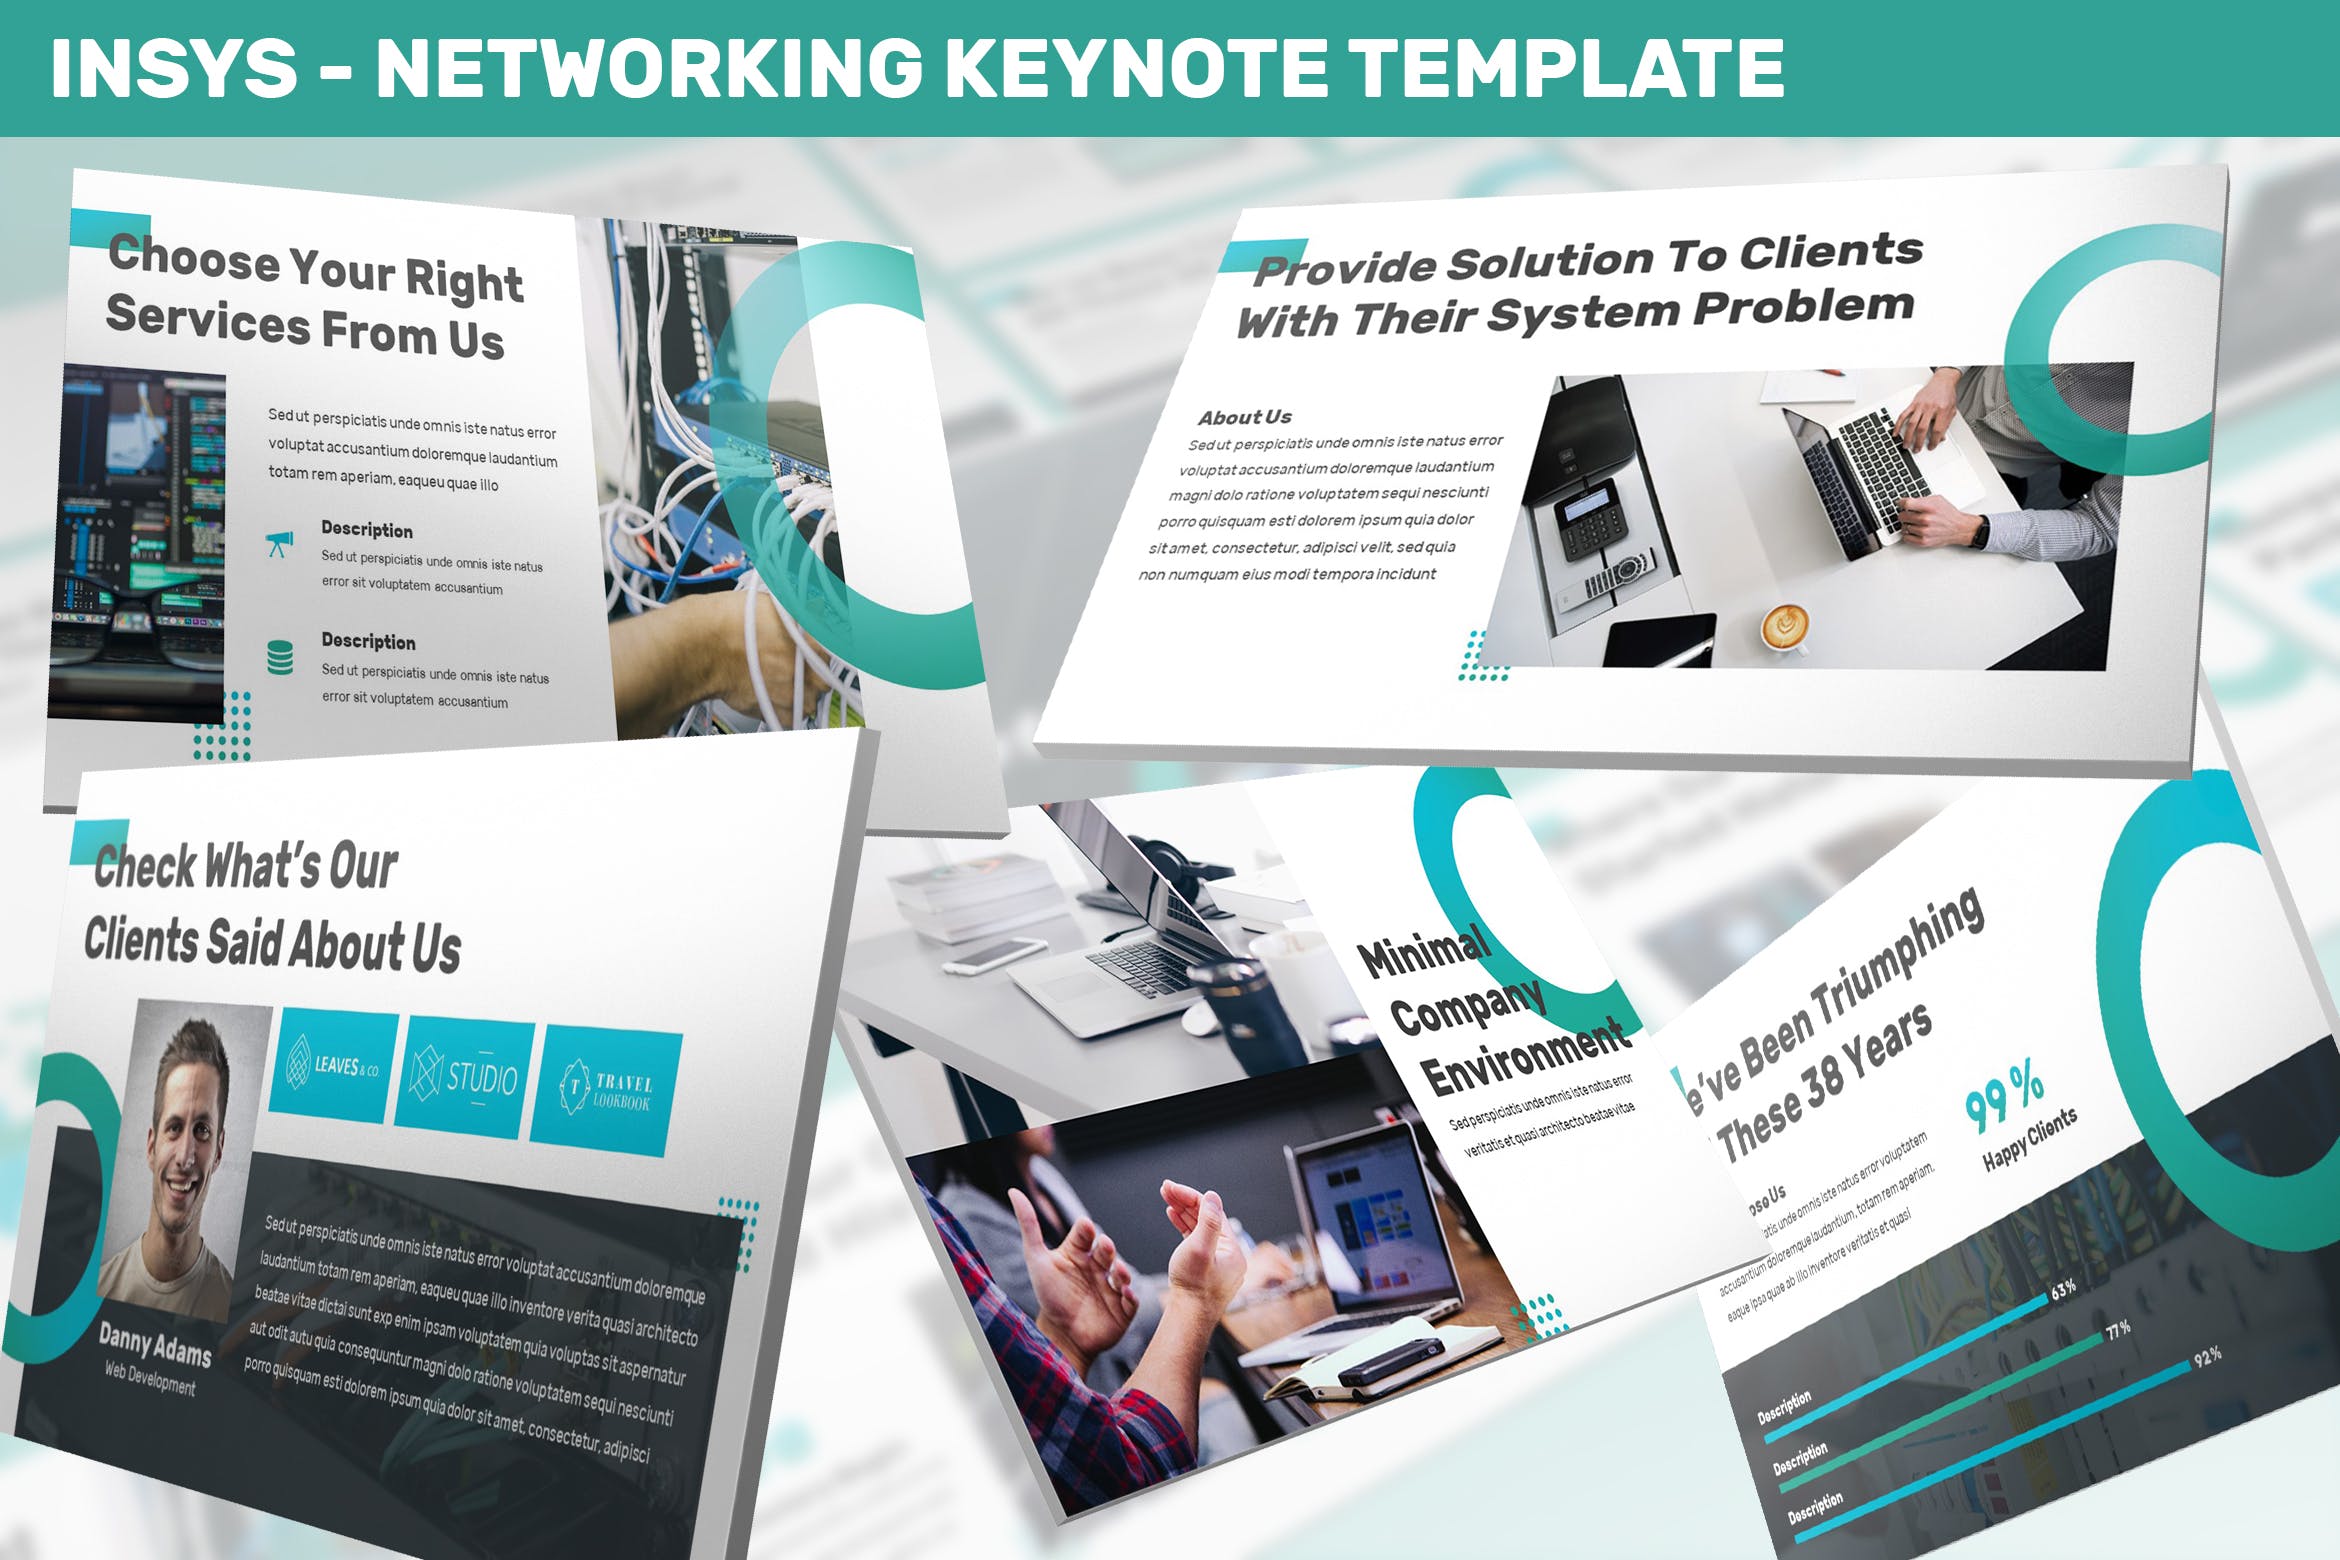 网络科技公司/技术/融资主题素材库精选Keynote模板模板 Insys – Networking Keynote Template插图